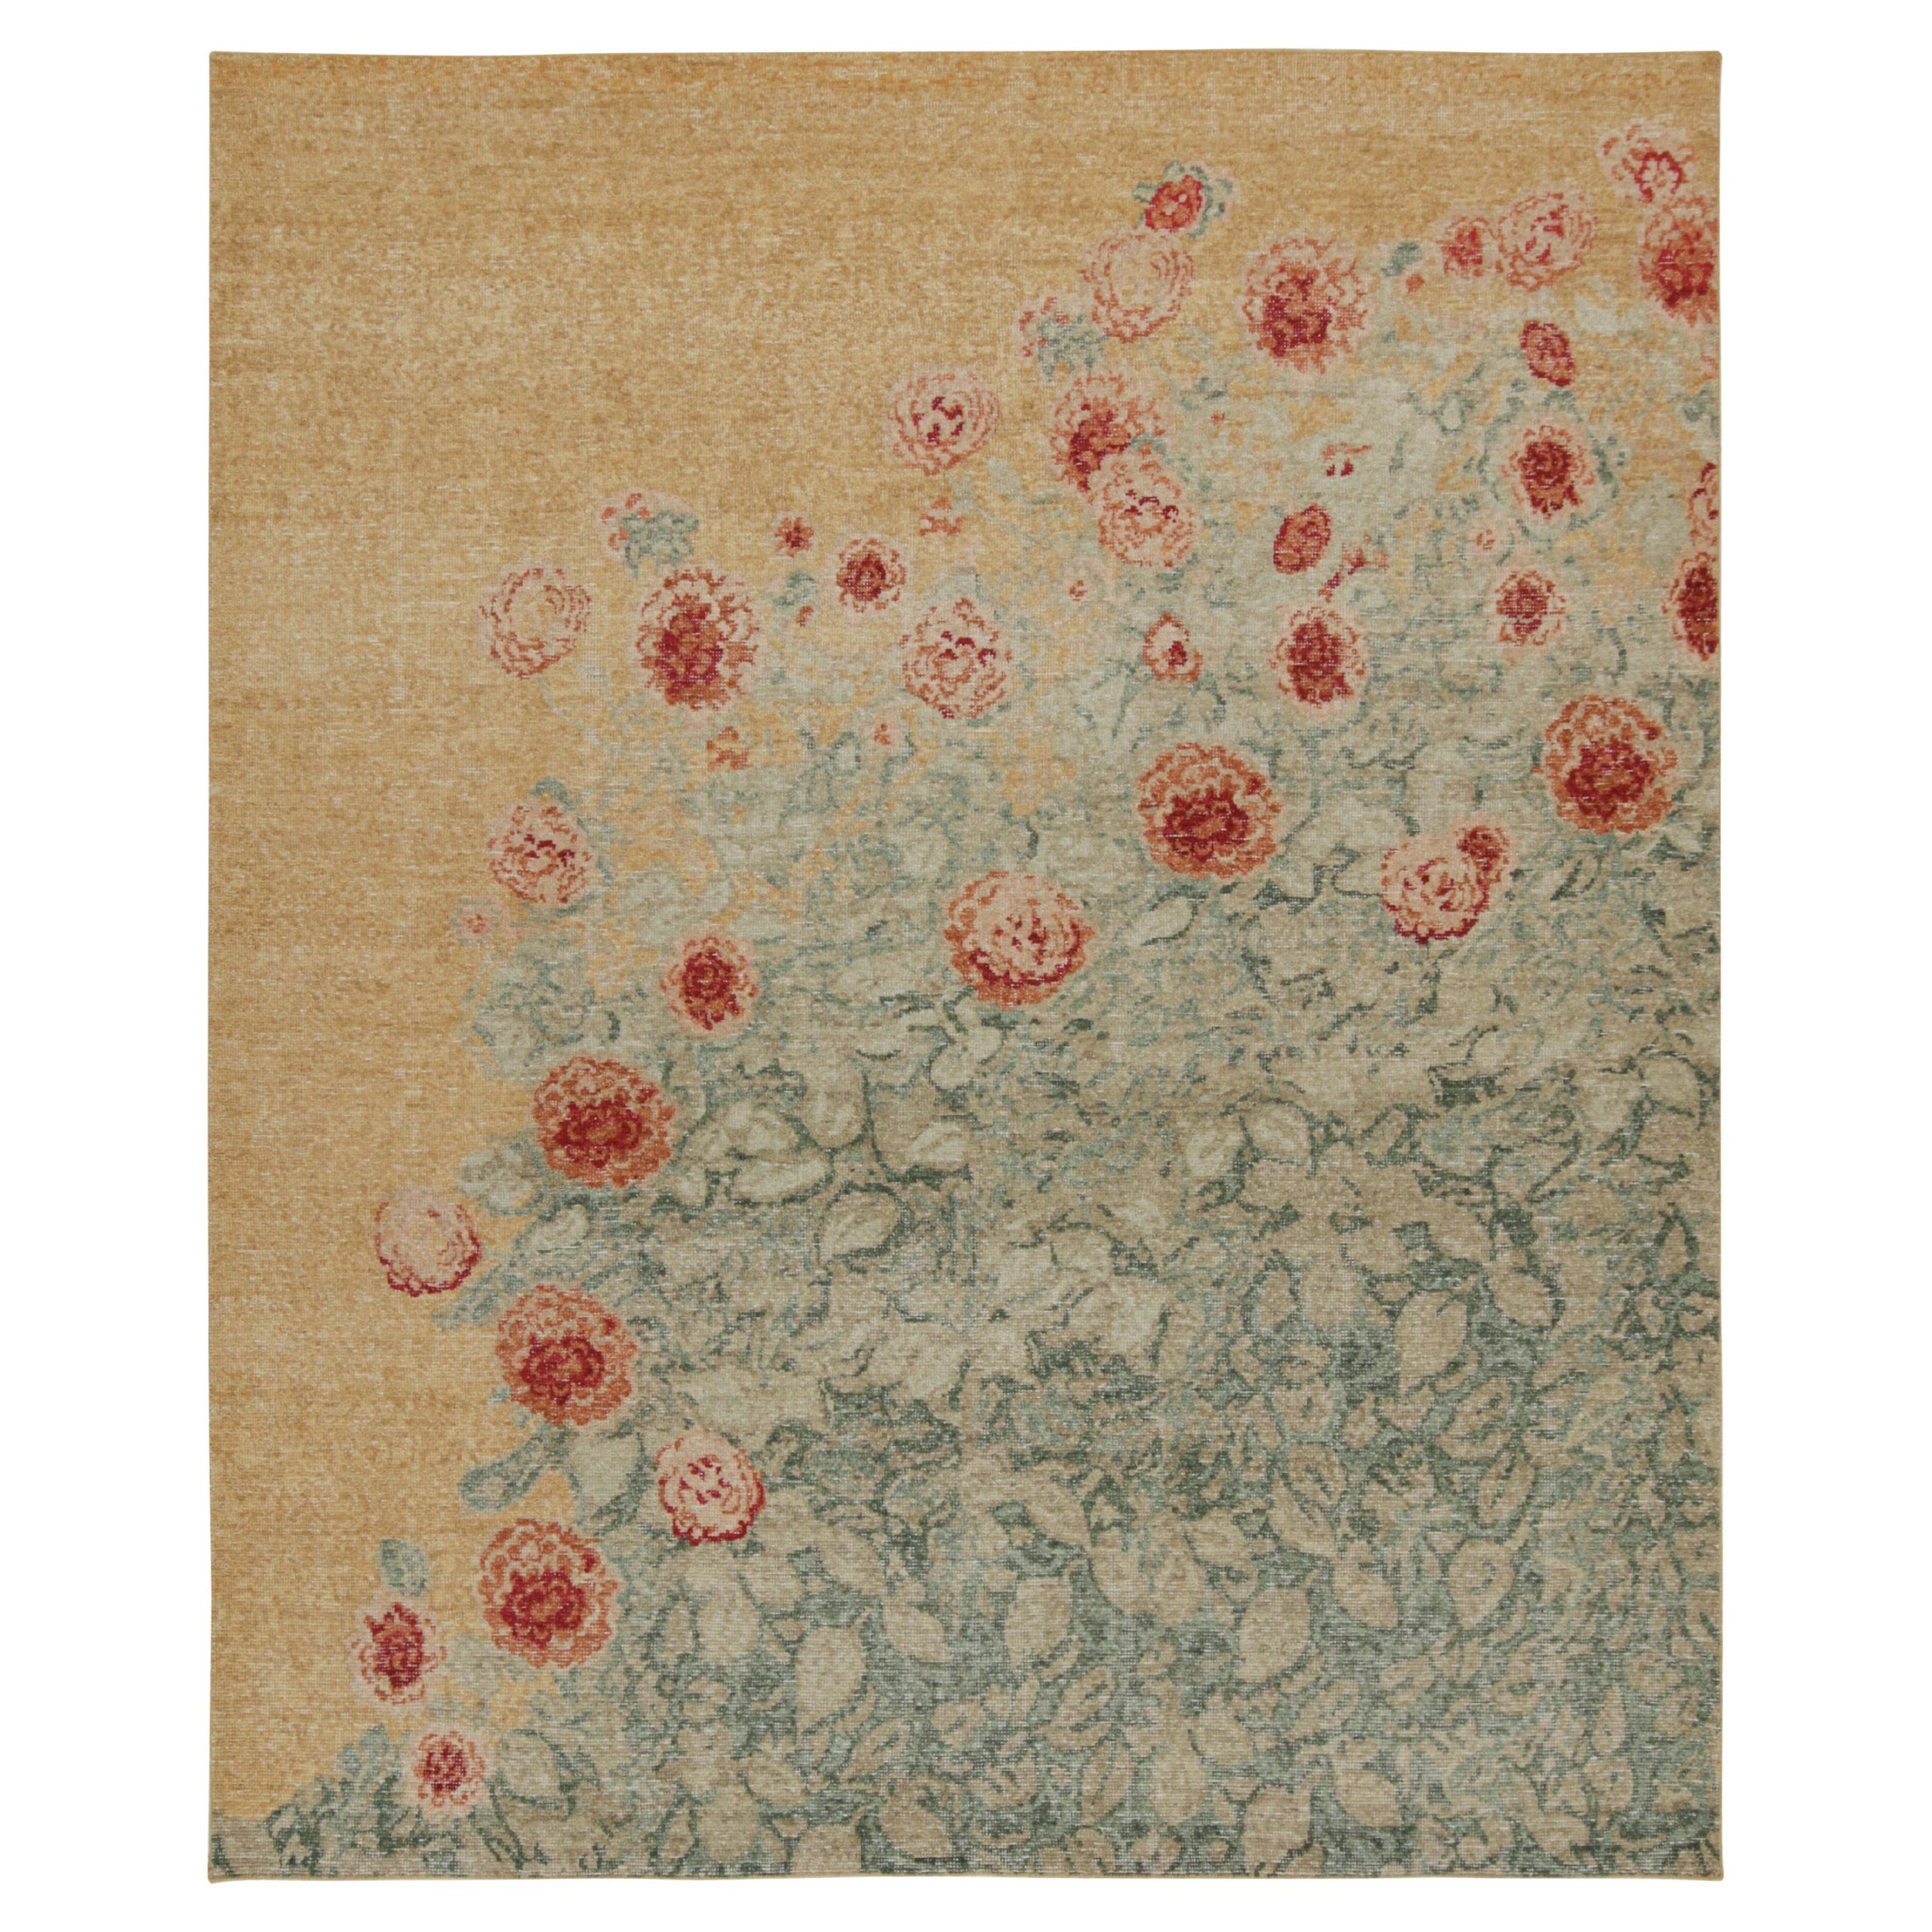 Rug & Kilim's Transitional-Teppich im Distressed-Stil mit polychromen Blumenmustern